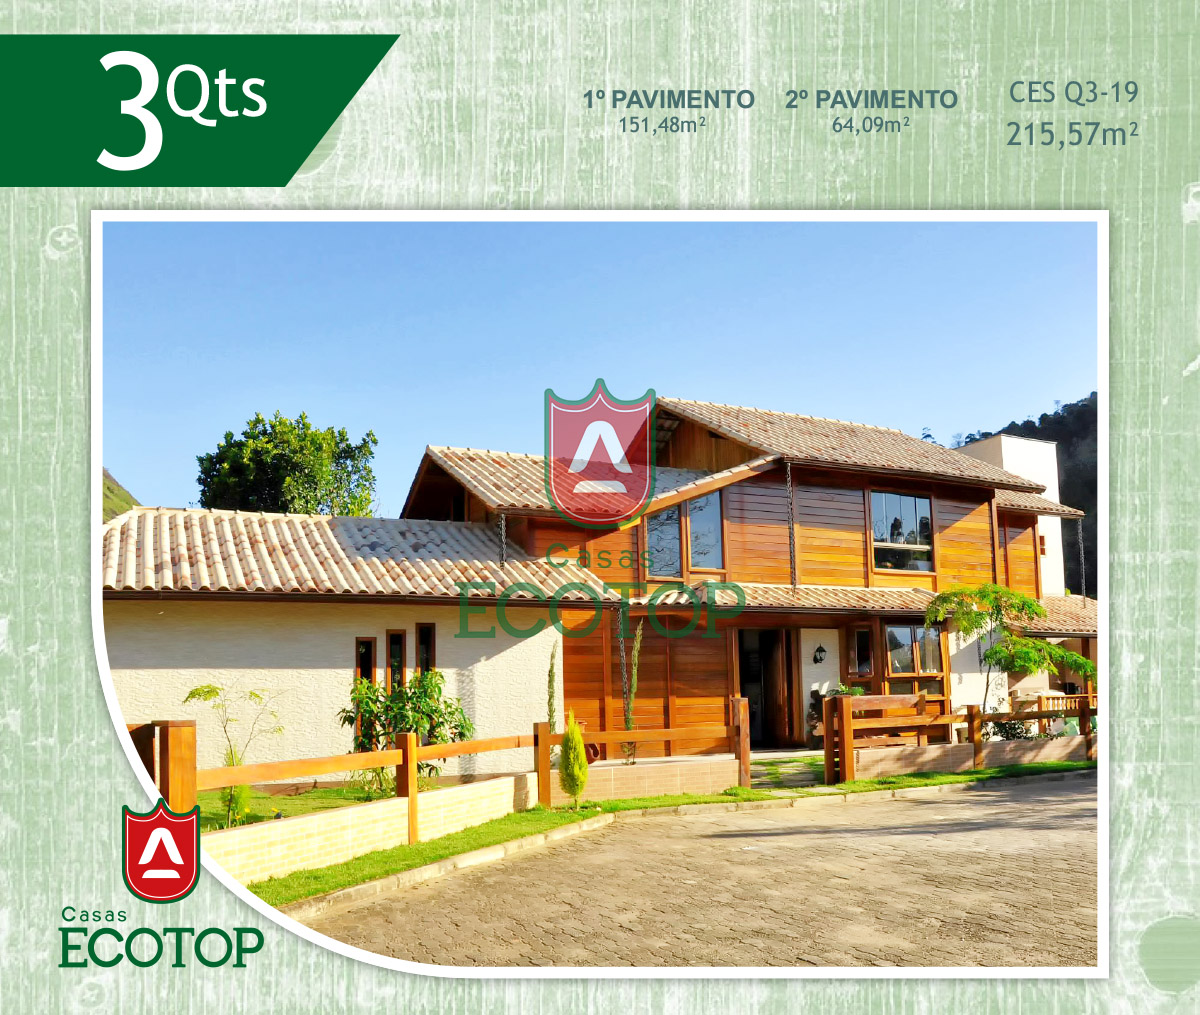 ces-19-fachada-casas-de-madeira-ecotop.cdr